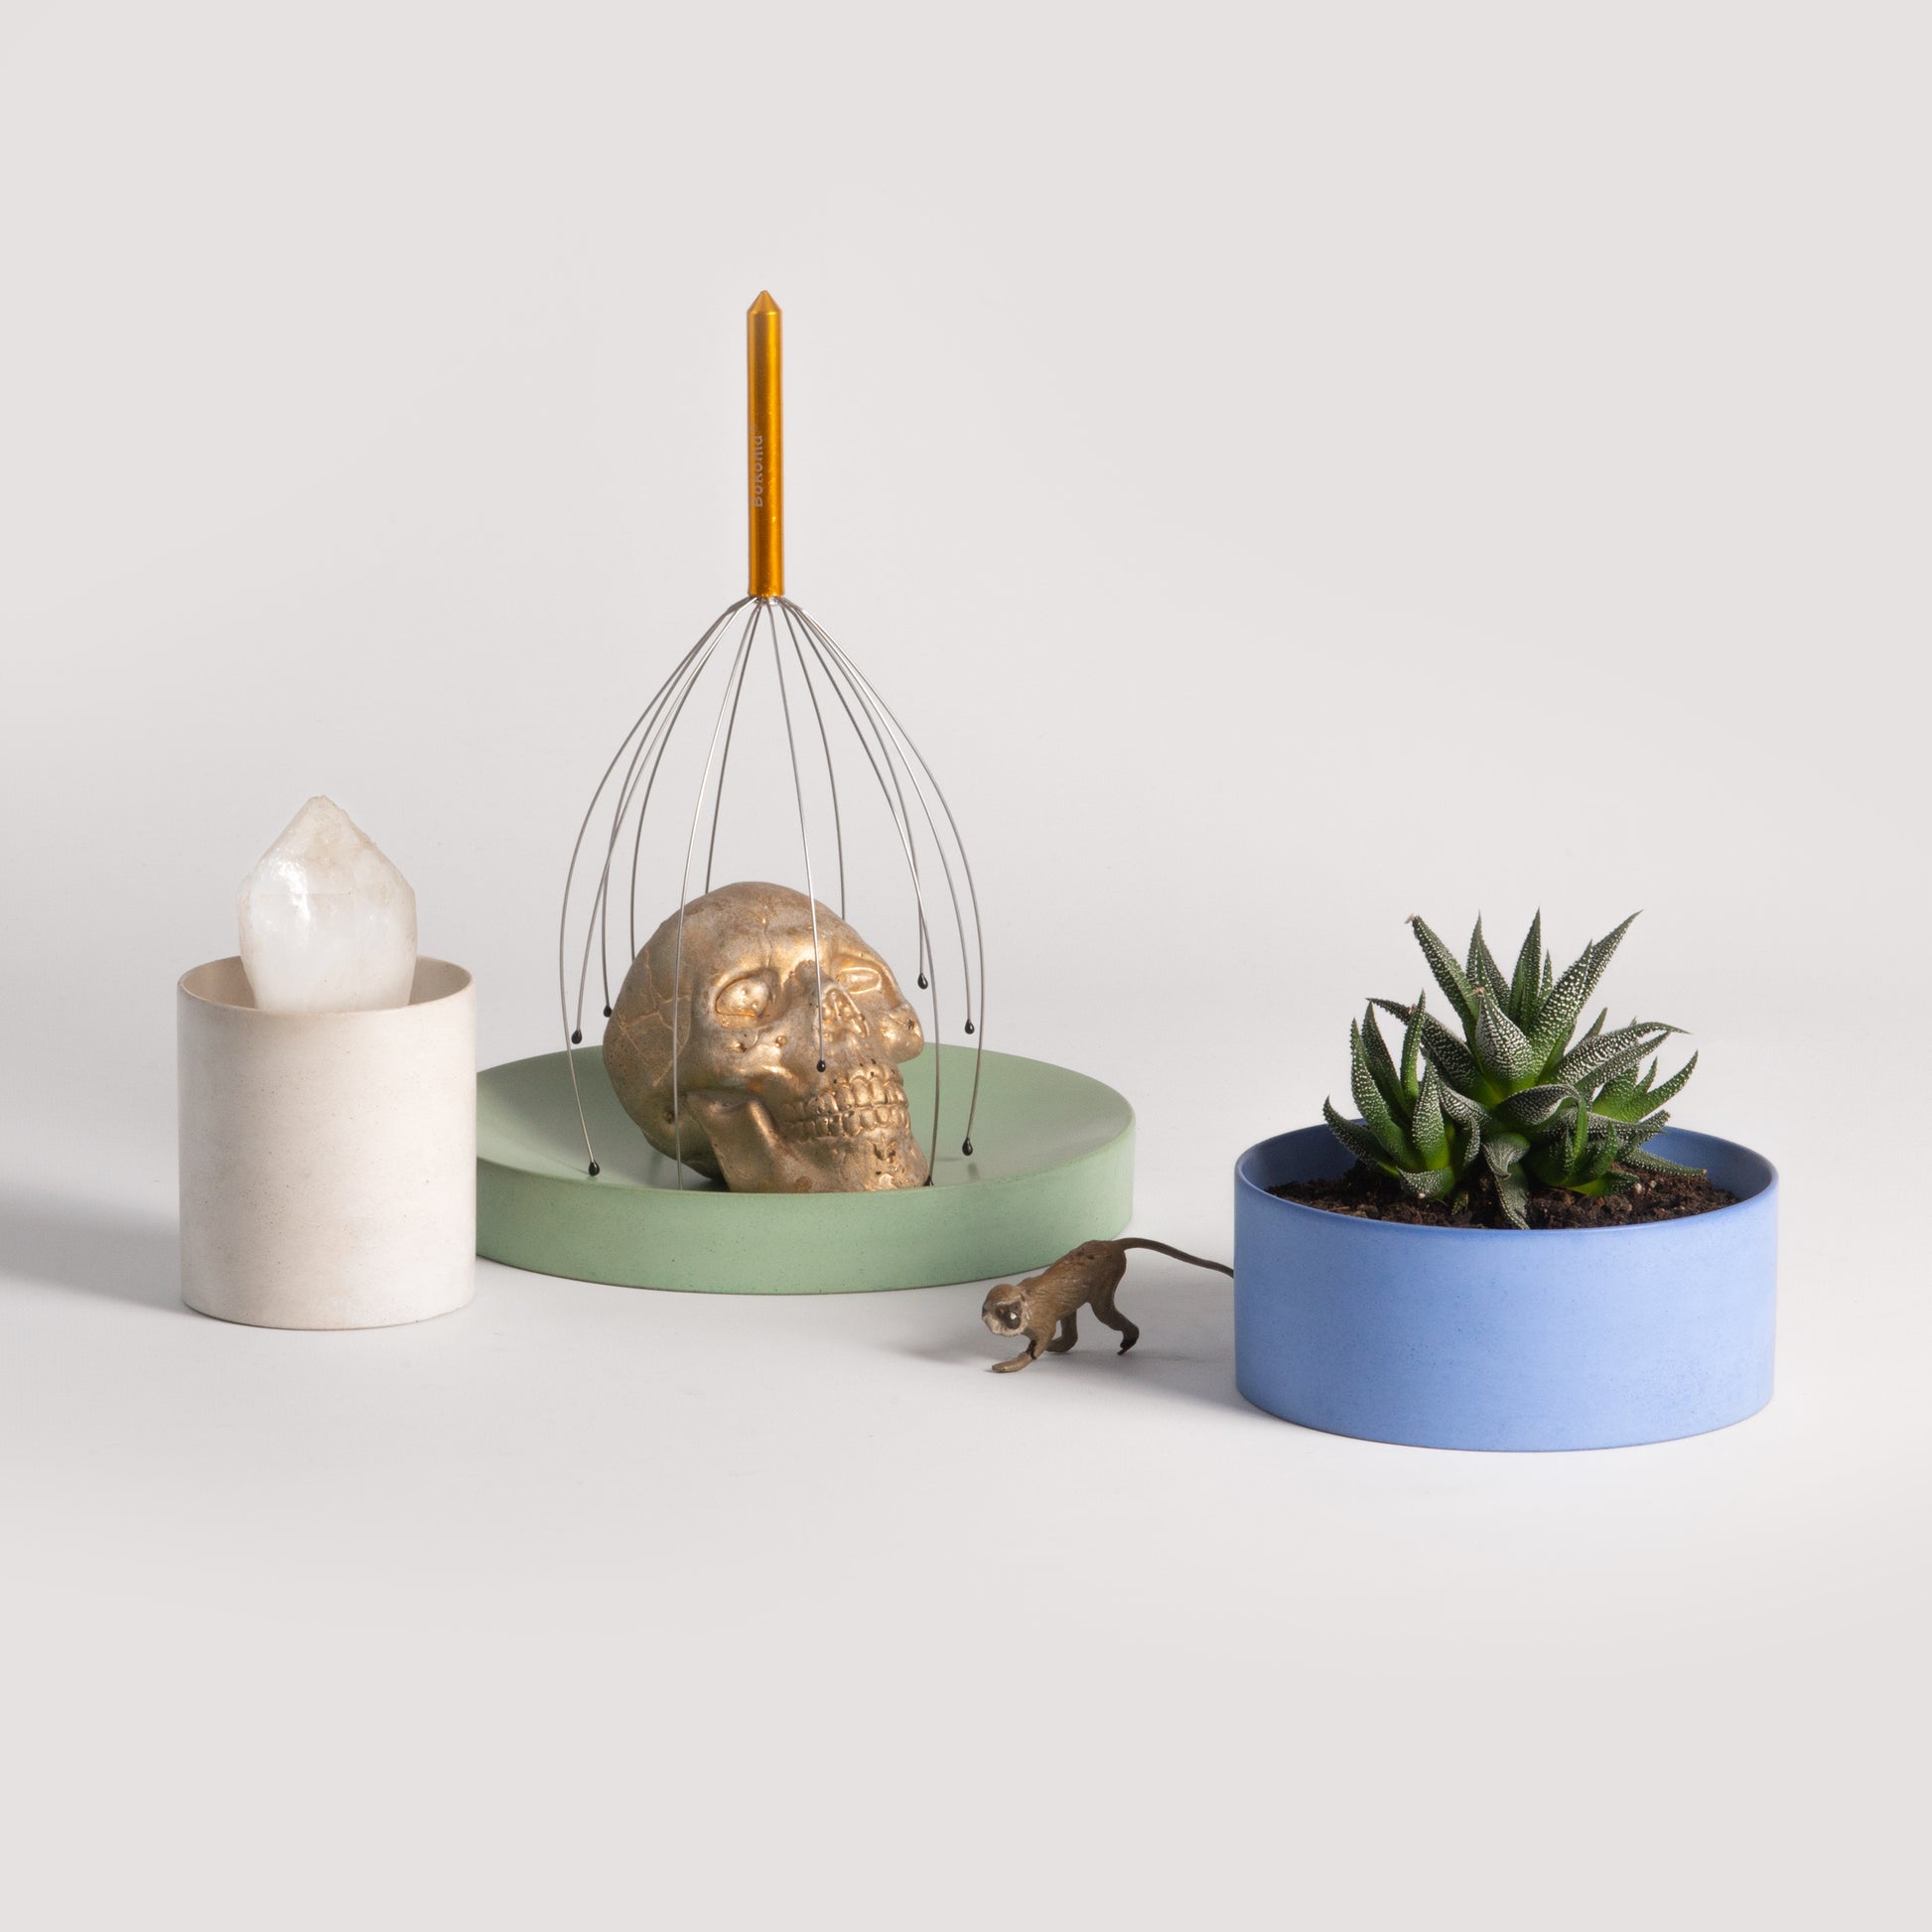 Concrete Bowl, Booles Mid, Minimalist Design, Von Morgen Design, Nave Shop - online concept store